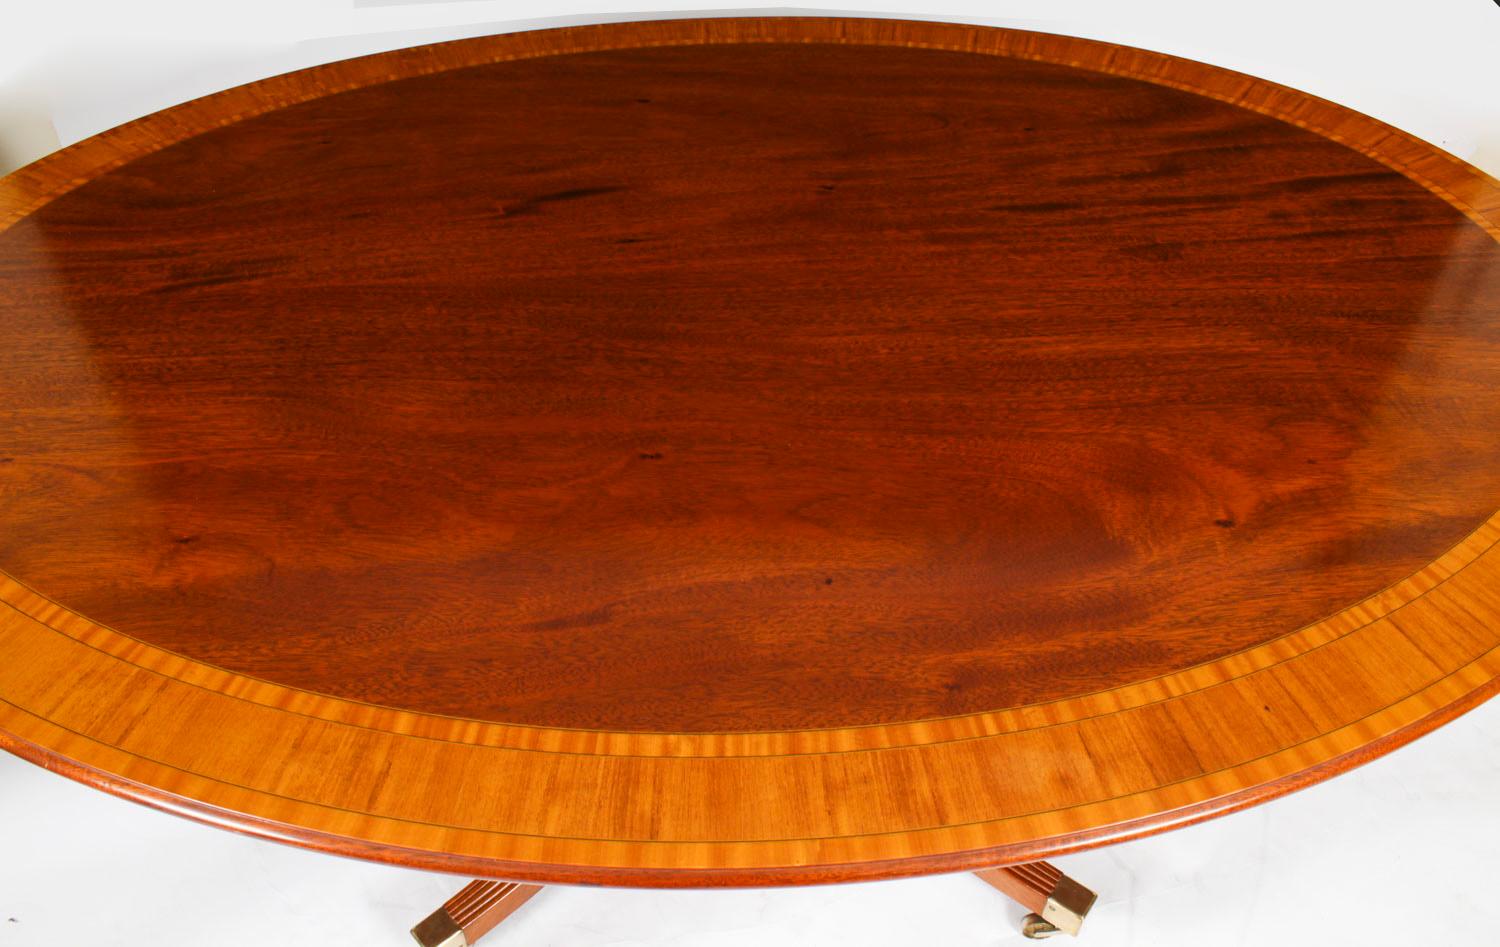 Regency Revival Vintage Oval Mahogany Tilt Top Dining Table by William Tillman 20th Century